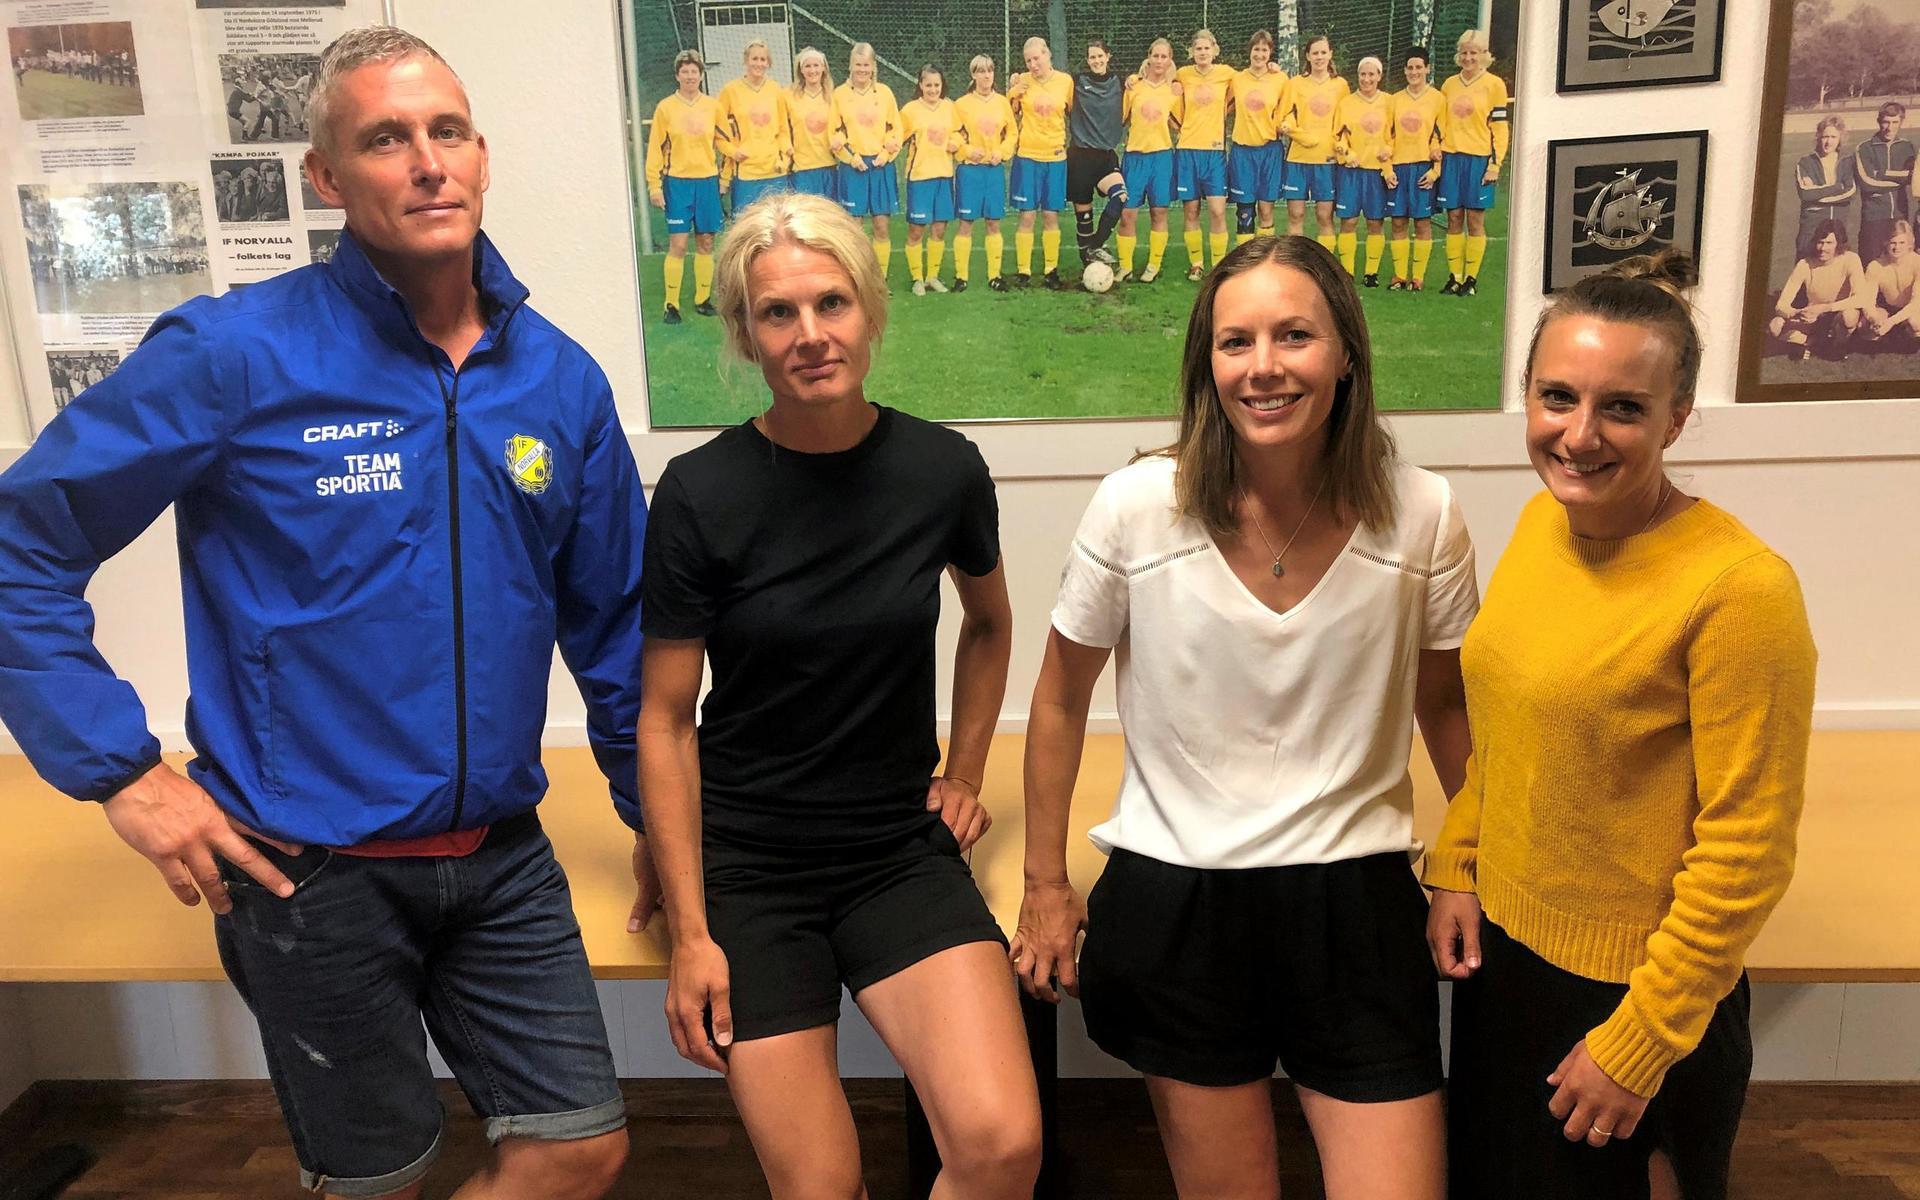 Delar av det gamla gänget samlat i IF Norvallas klubblokal. Från vänster: Niclas Olausson, Caroline Larsson, Cecilia Larsson och Camilla Otterdahl. 